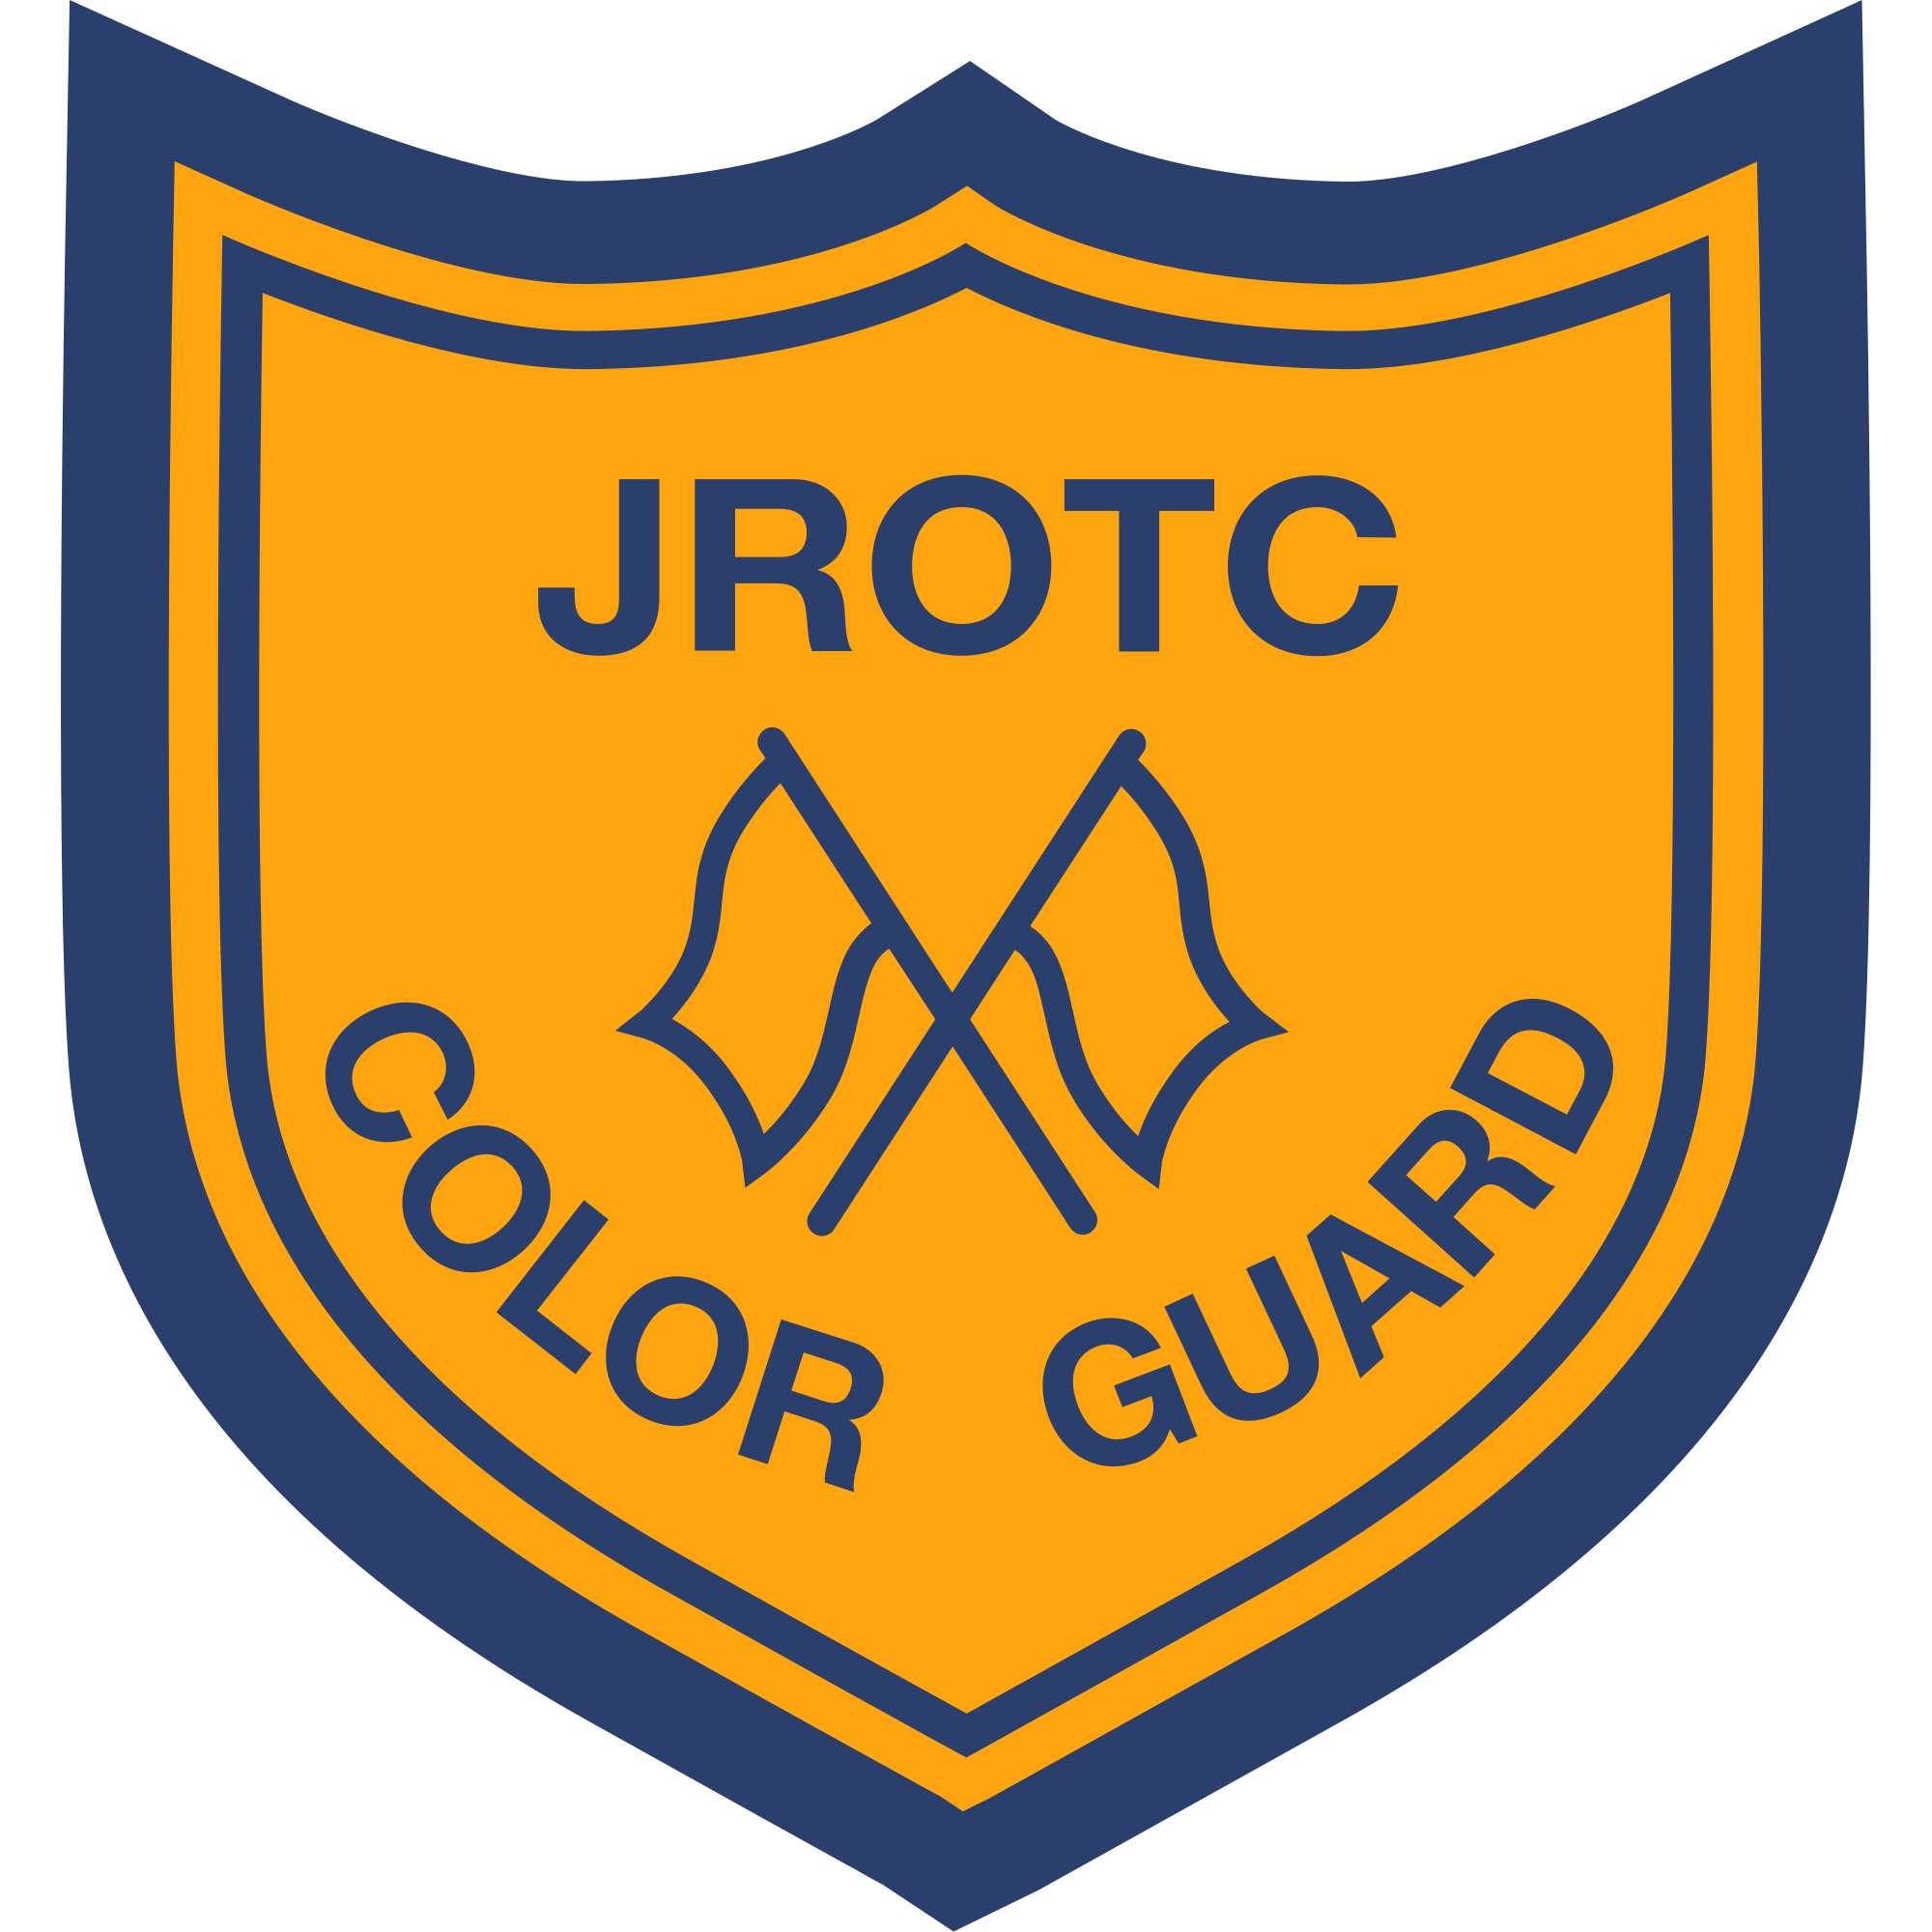 Color Guard (JROTC)